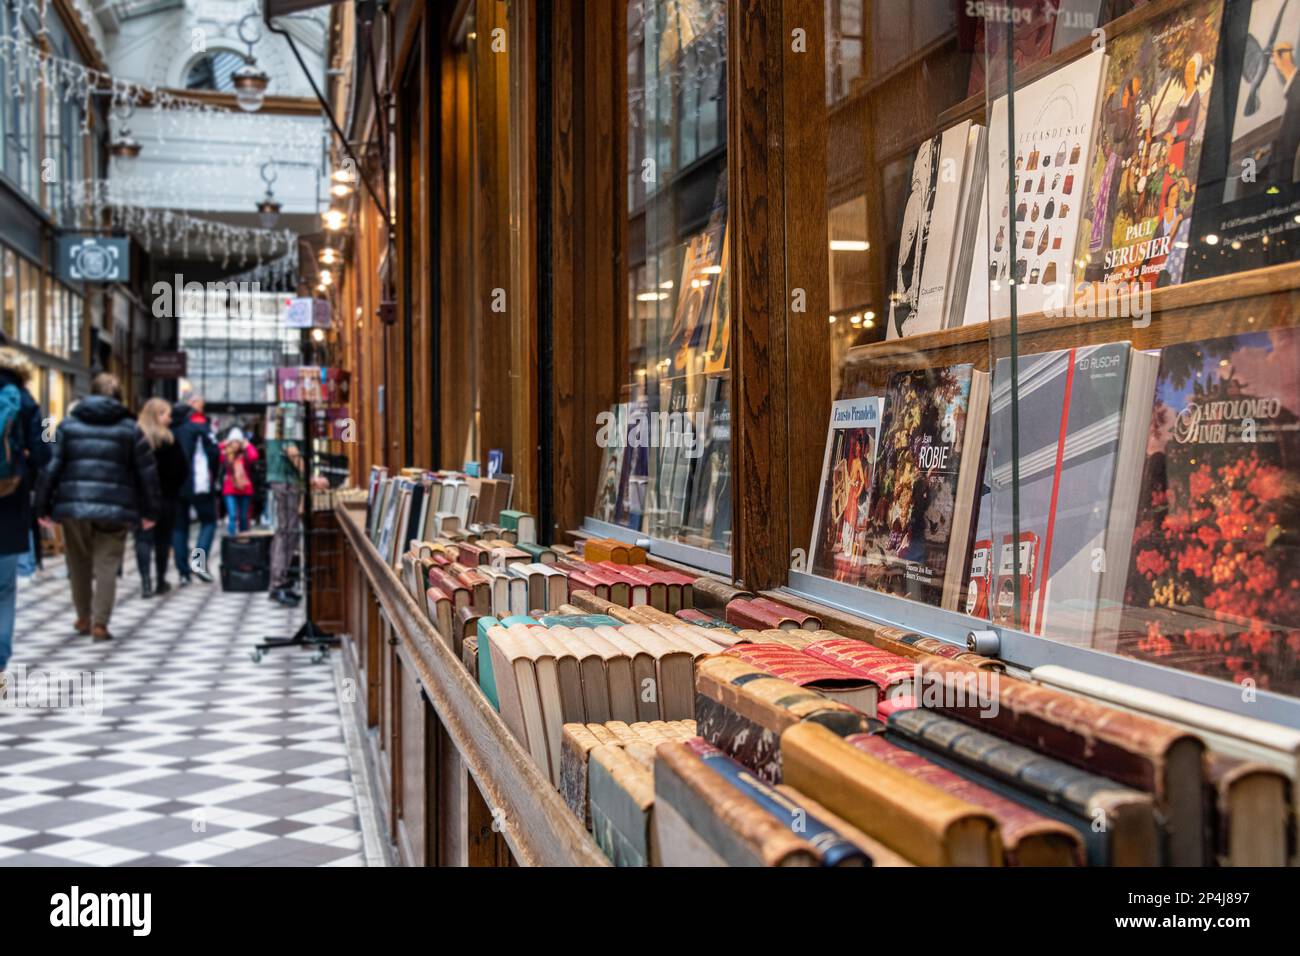 The antique bookshop Libraire du Passage in the Passage Jouffroy, 9th Arrondisement Paris. Stock Photo